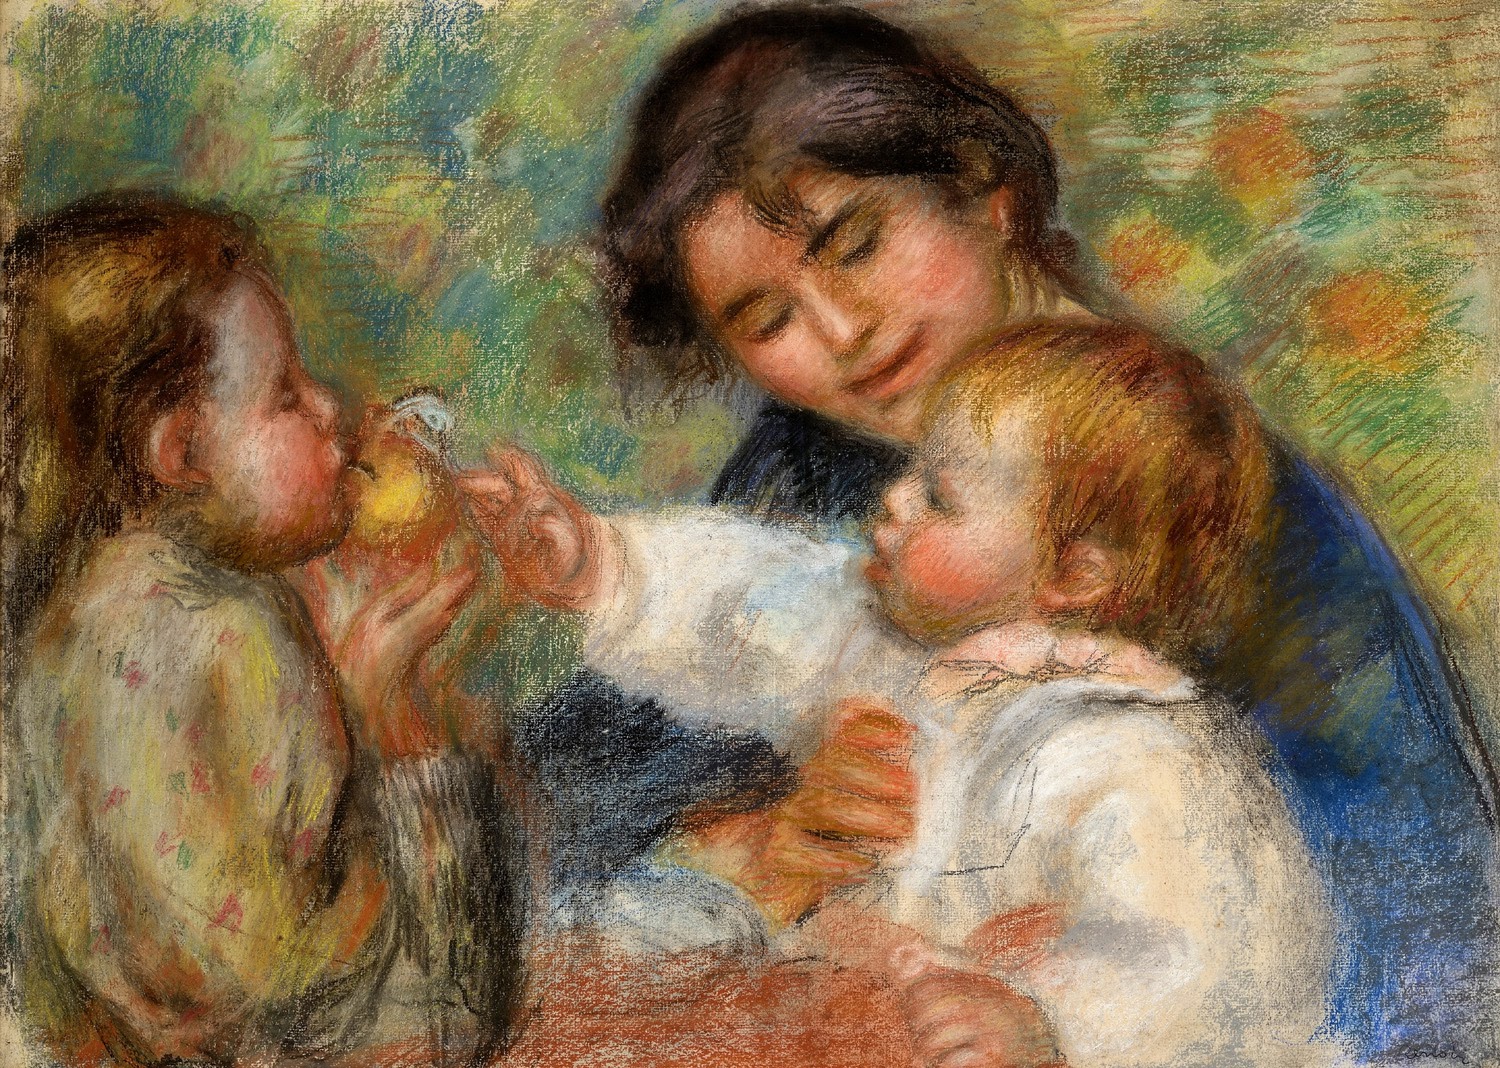 Pierre+Auguste+Renoir-1841-1-19 (206).jpg